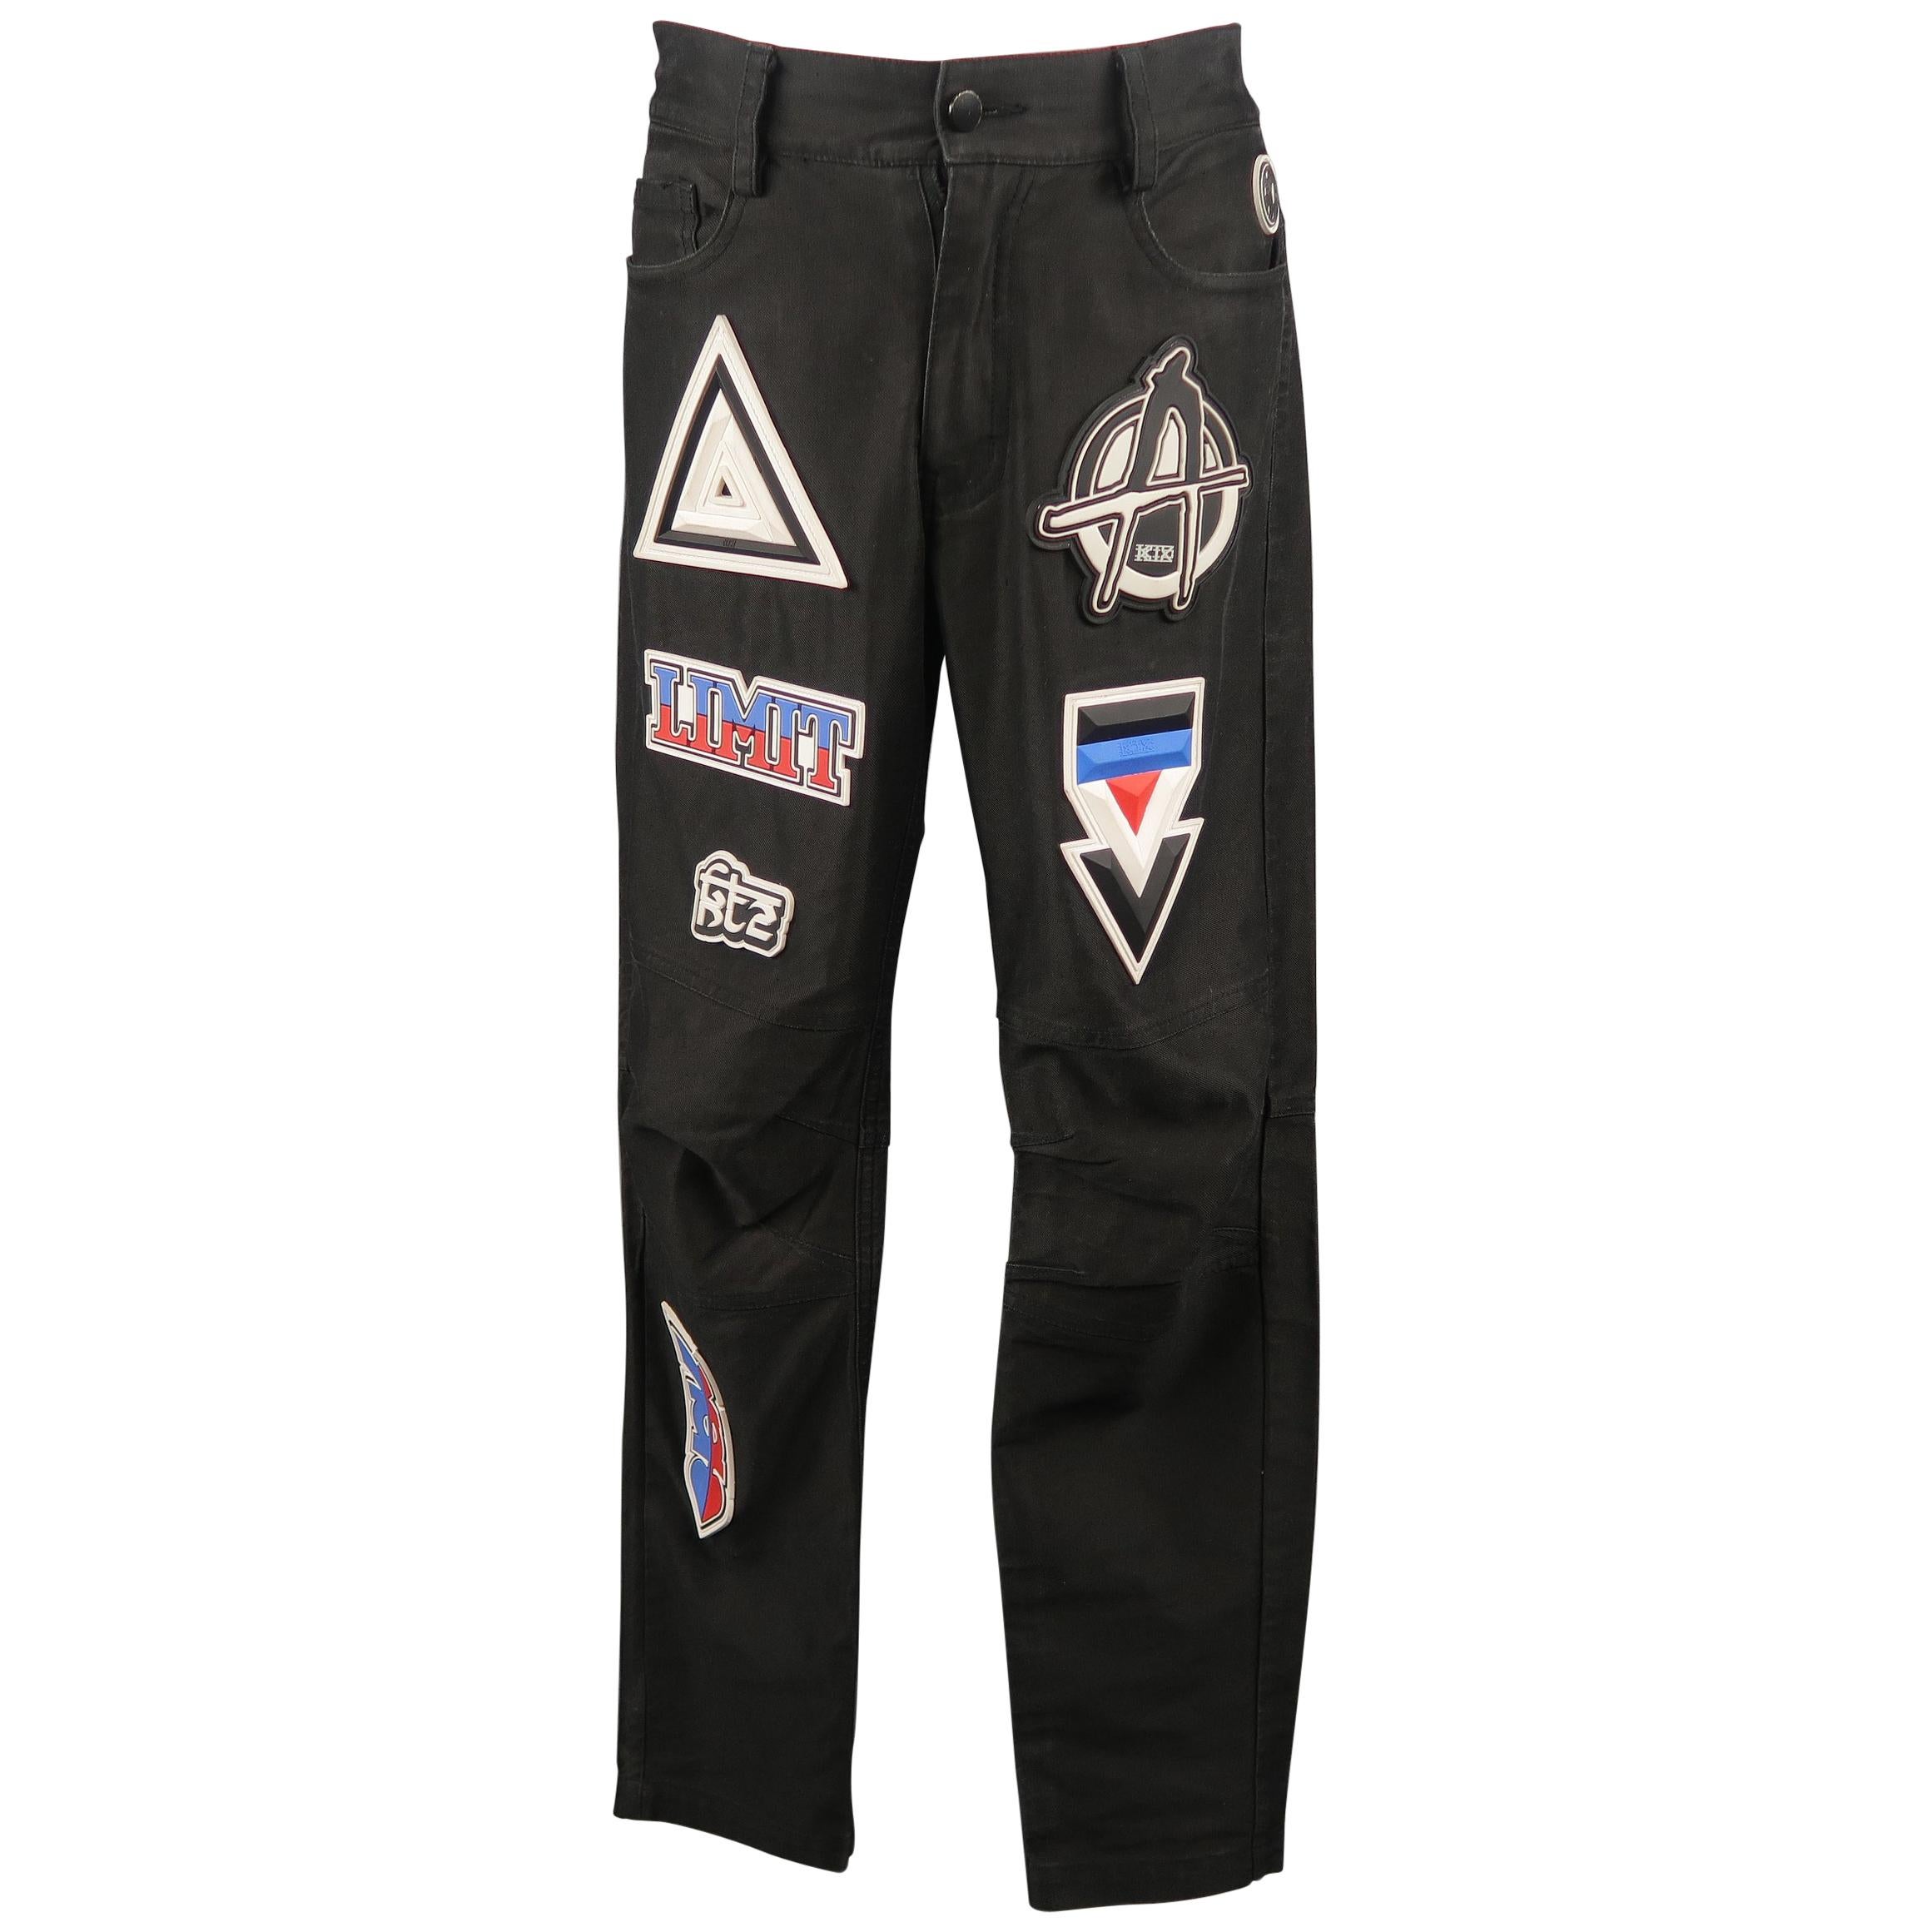 KTZ Size M Black Rubber Motocross Aplique Cotton Pants / Jeans